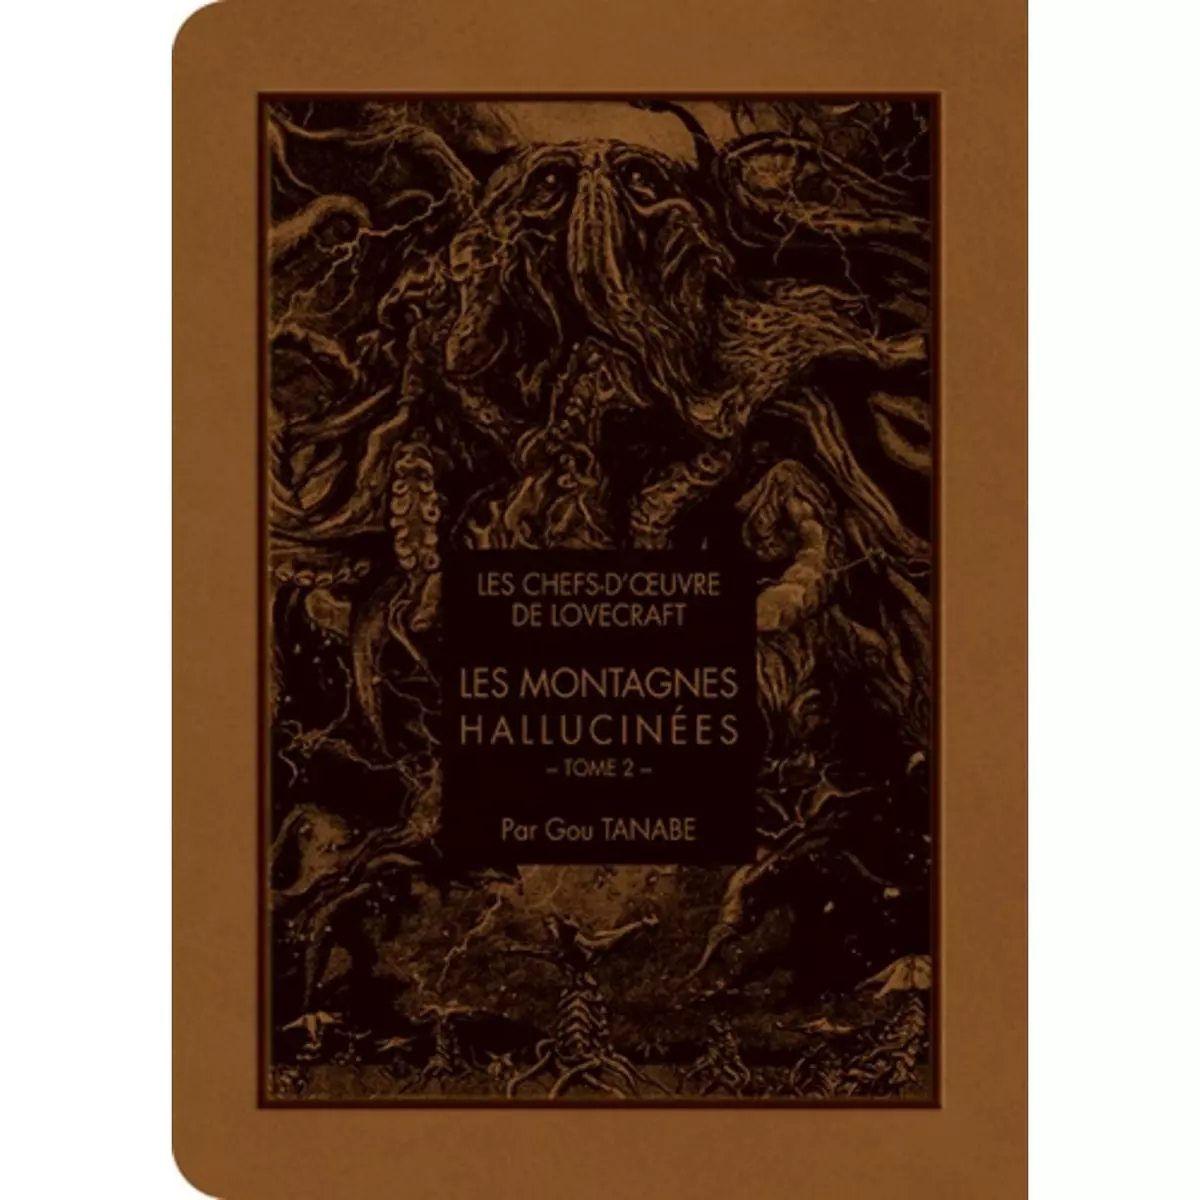  Les chefs-d'oeuvre de Lovecraft Tome 2 : Les montagnes hallucinées, Tanabe Gou